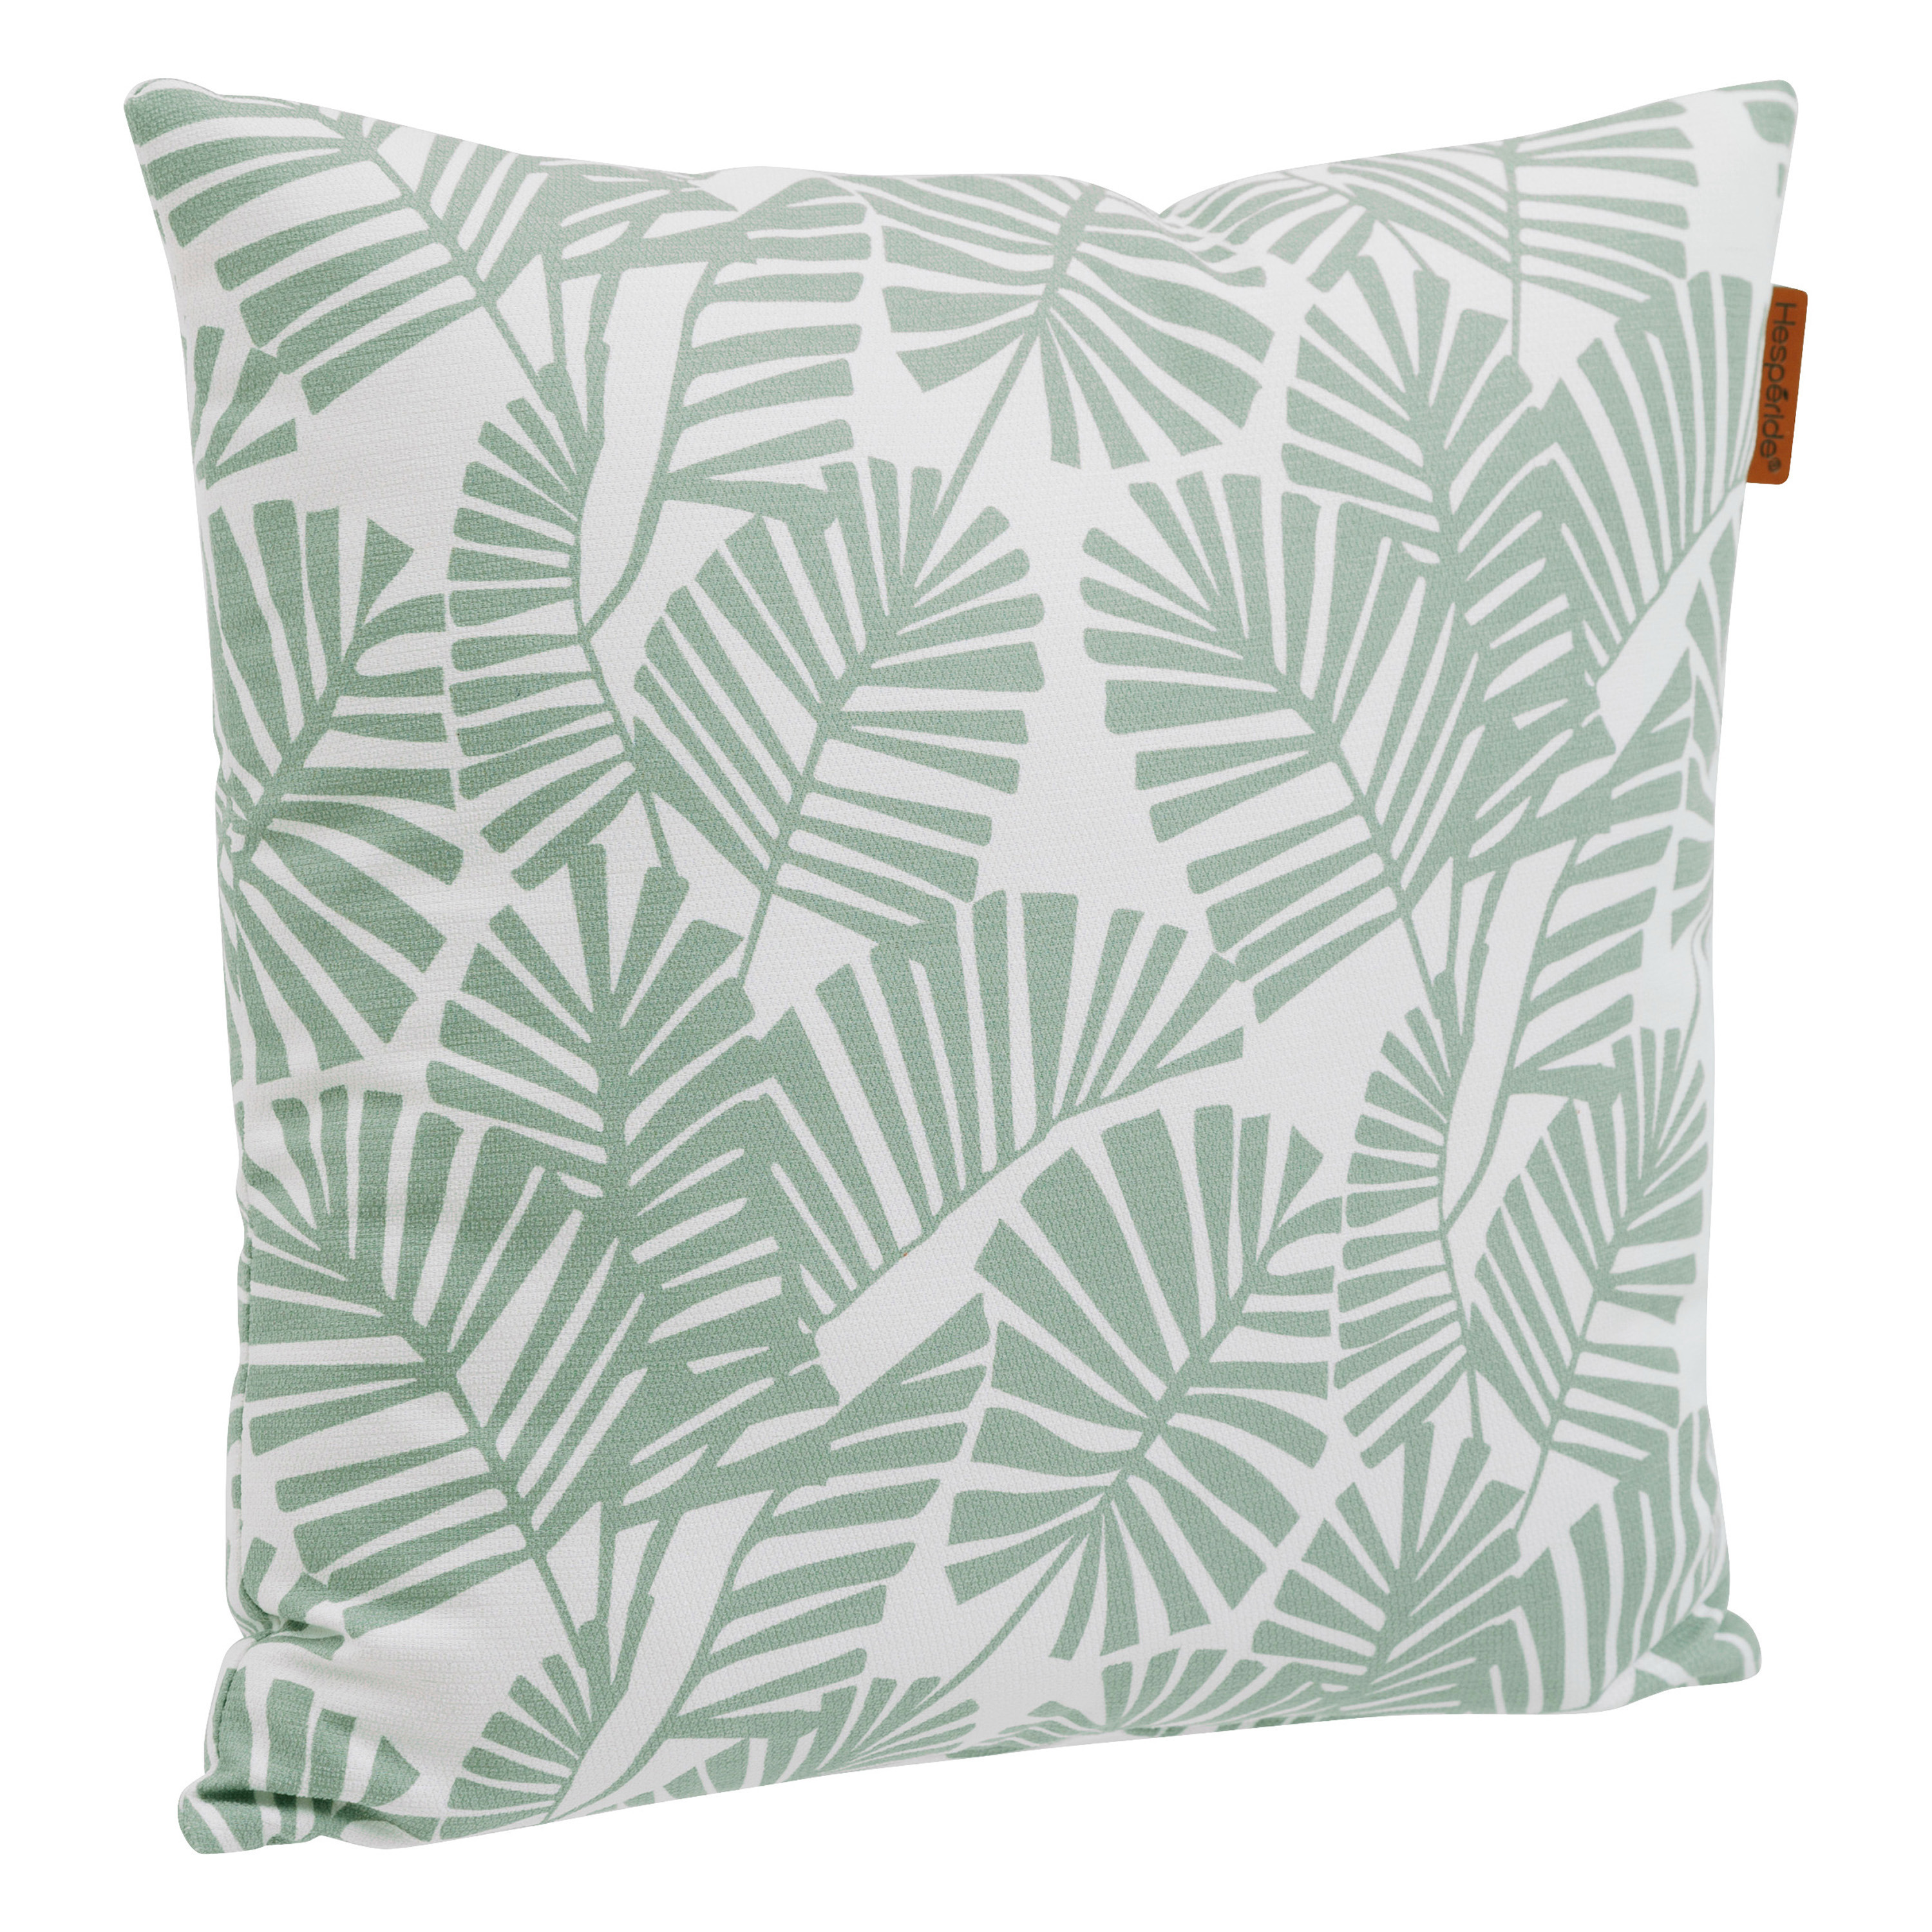 Bank-sier-tuin kussens voor binnen en buiten in palm print 40 x 40 x 10 cm